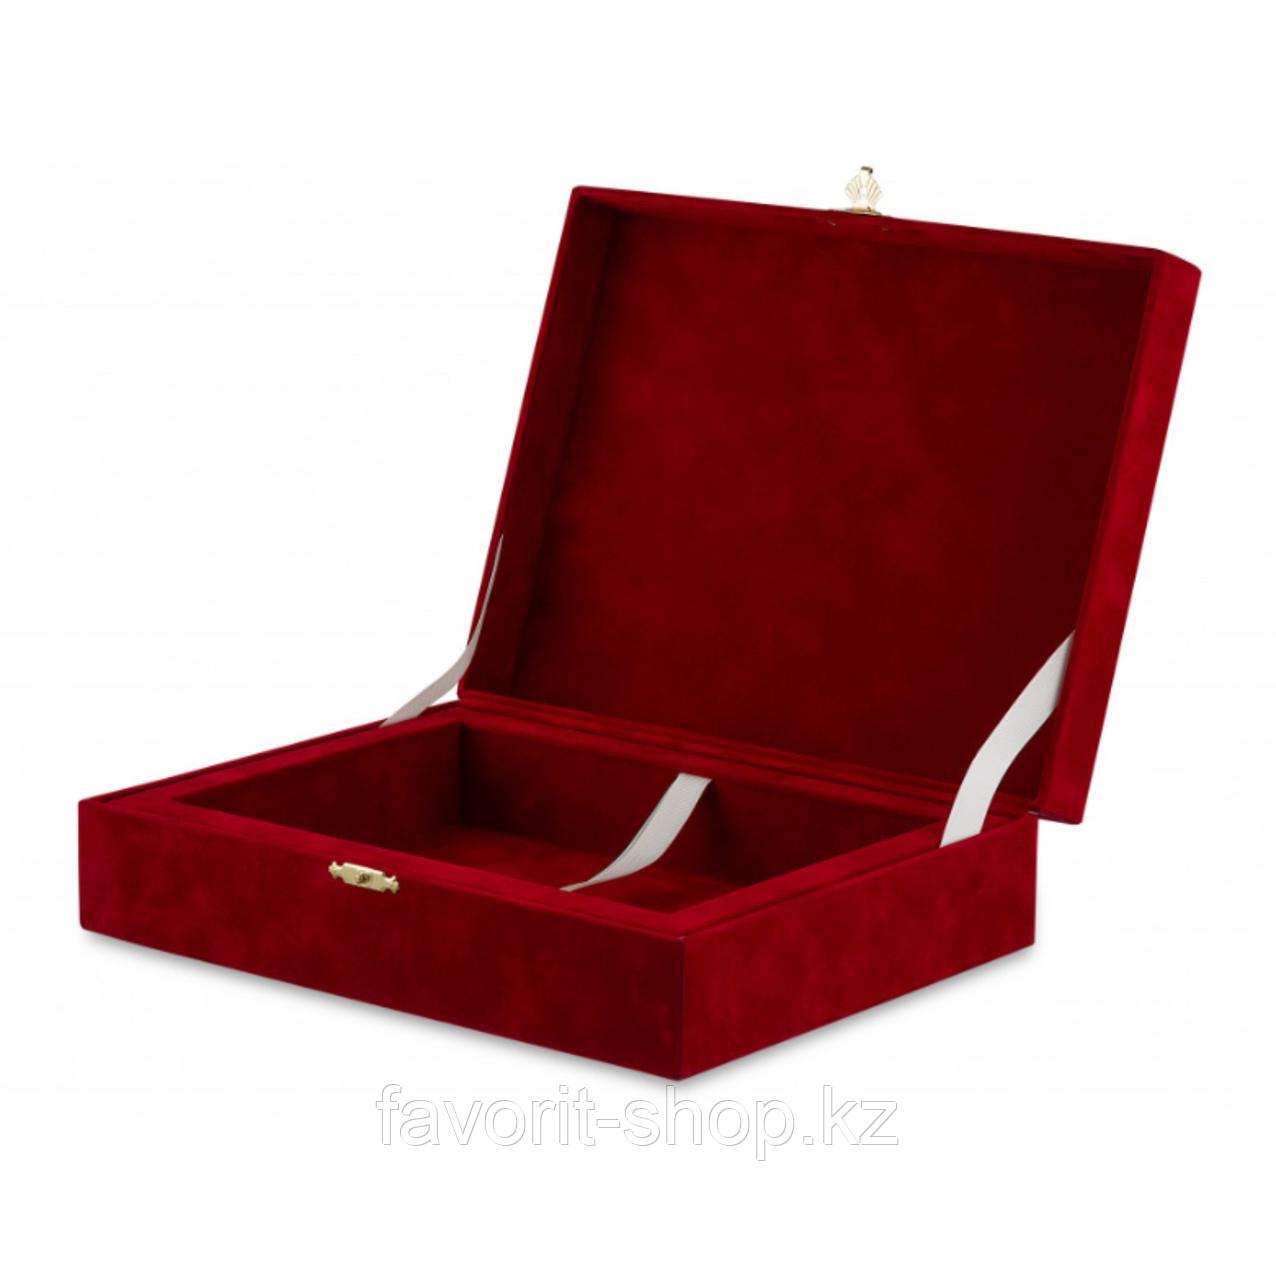 Шкатулка бархатная красная с замком / Изготовление подарочной упаковки на заказ